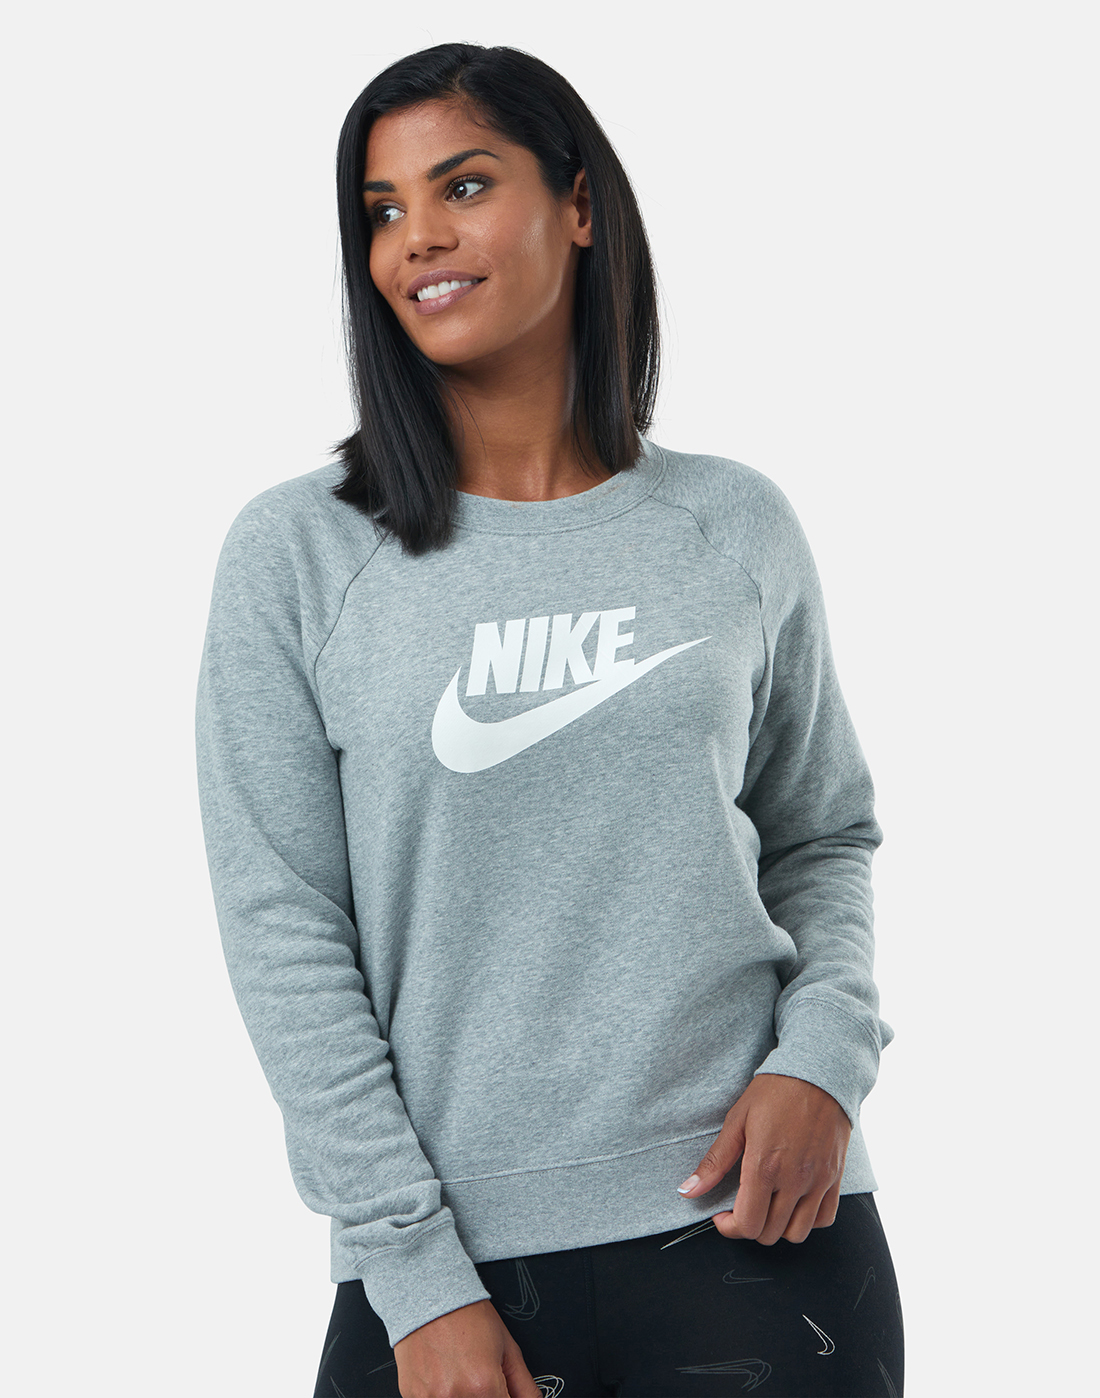 Women's Grey Nike Fleece Sweatshirt | Life Style Sports